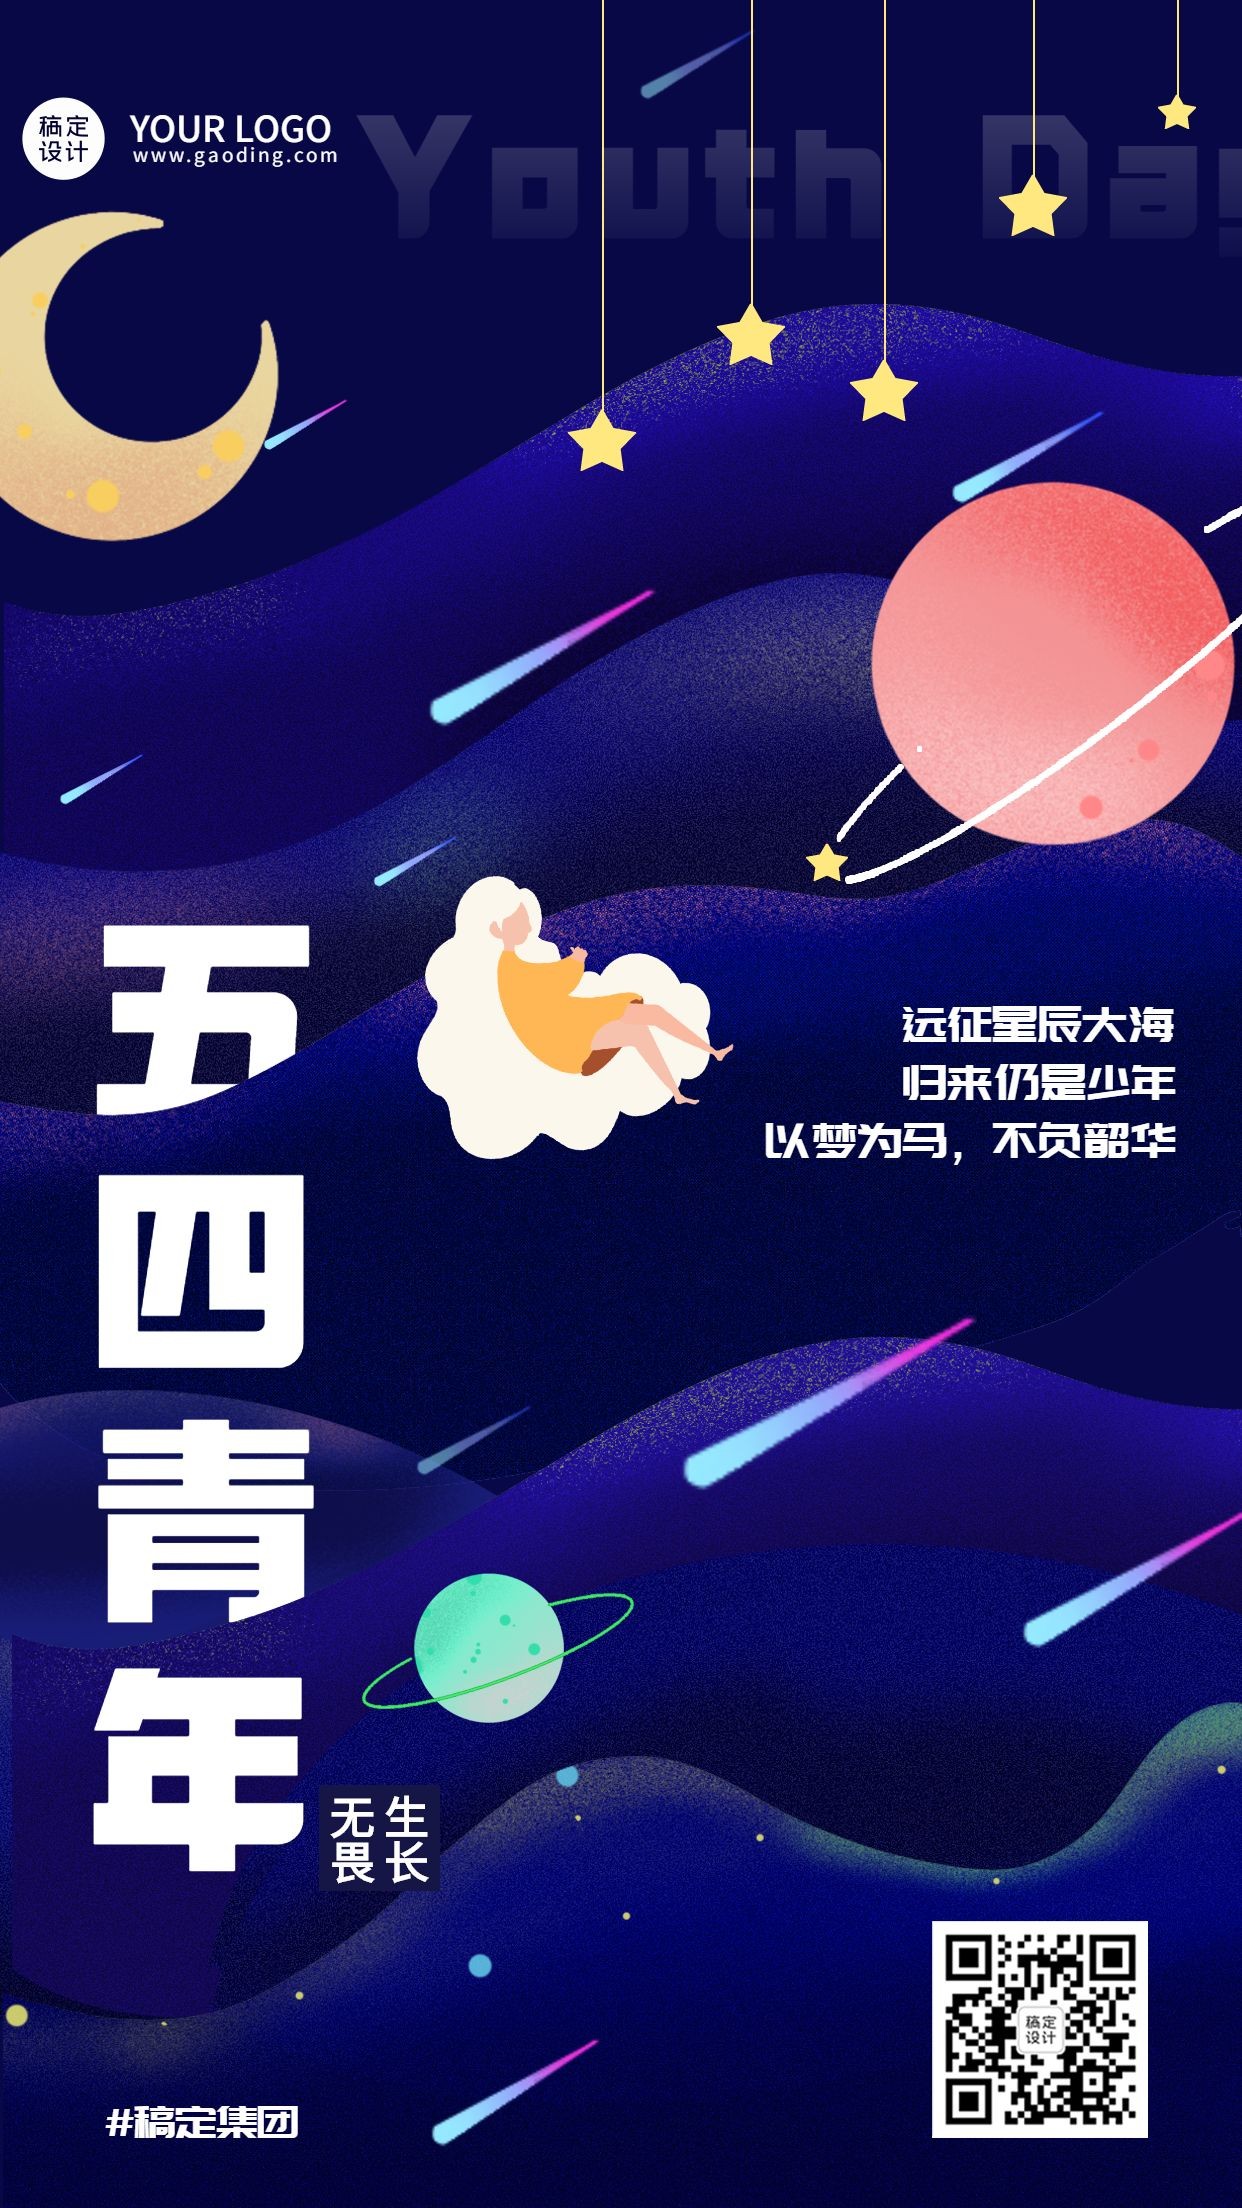 五四青年节企业祝福贺卡手机海报预览效果